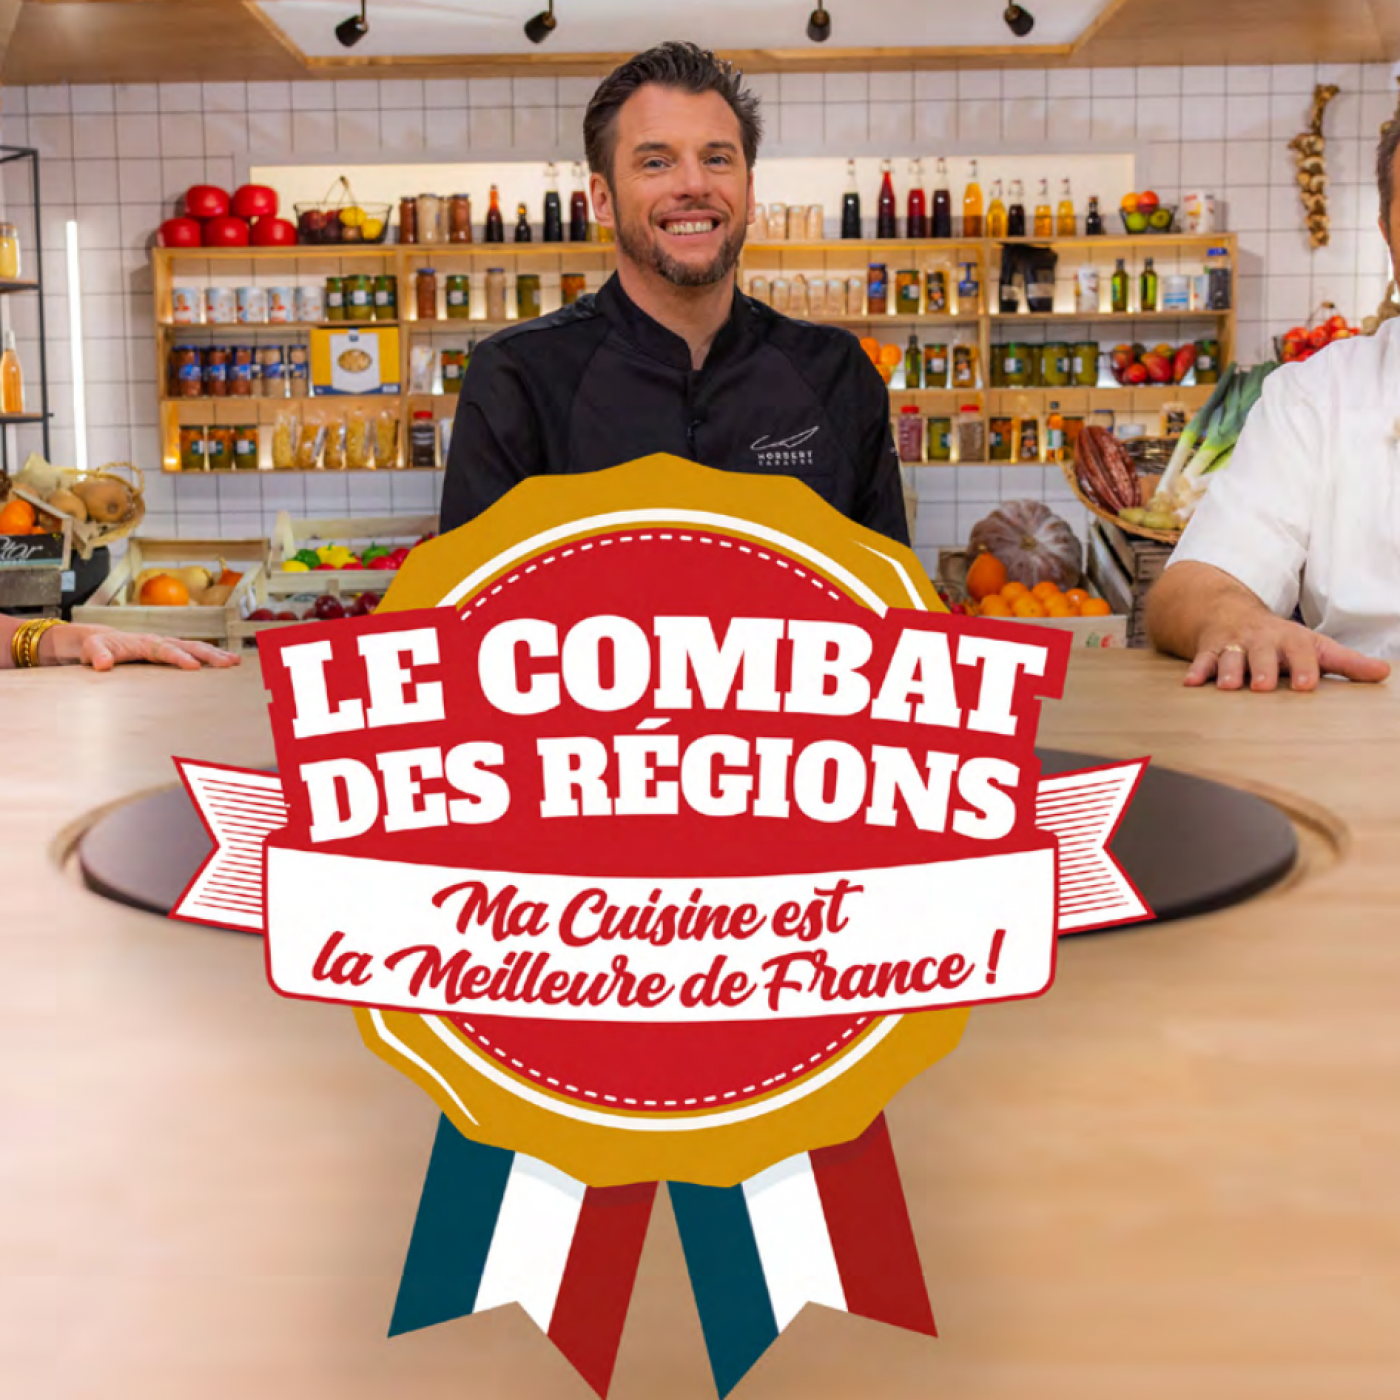 Le Combat des Régions, la nouvelle émission culinaire sur M6